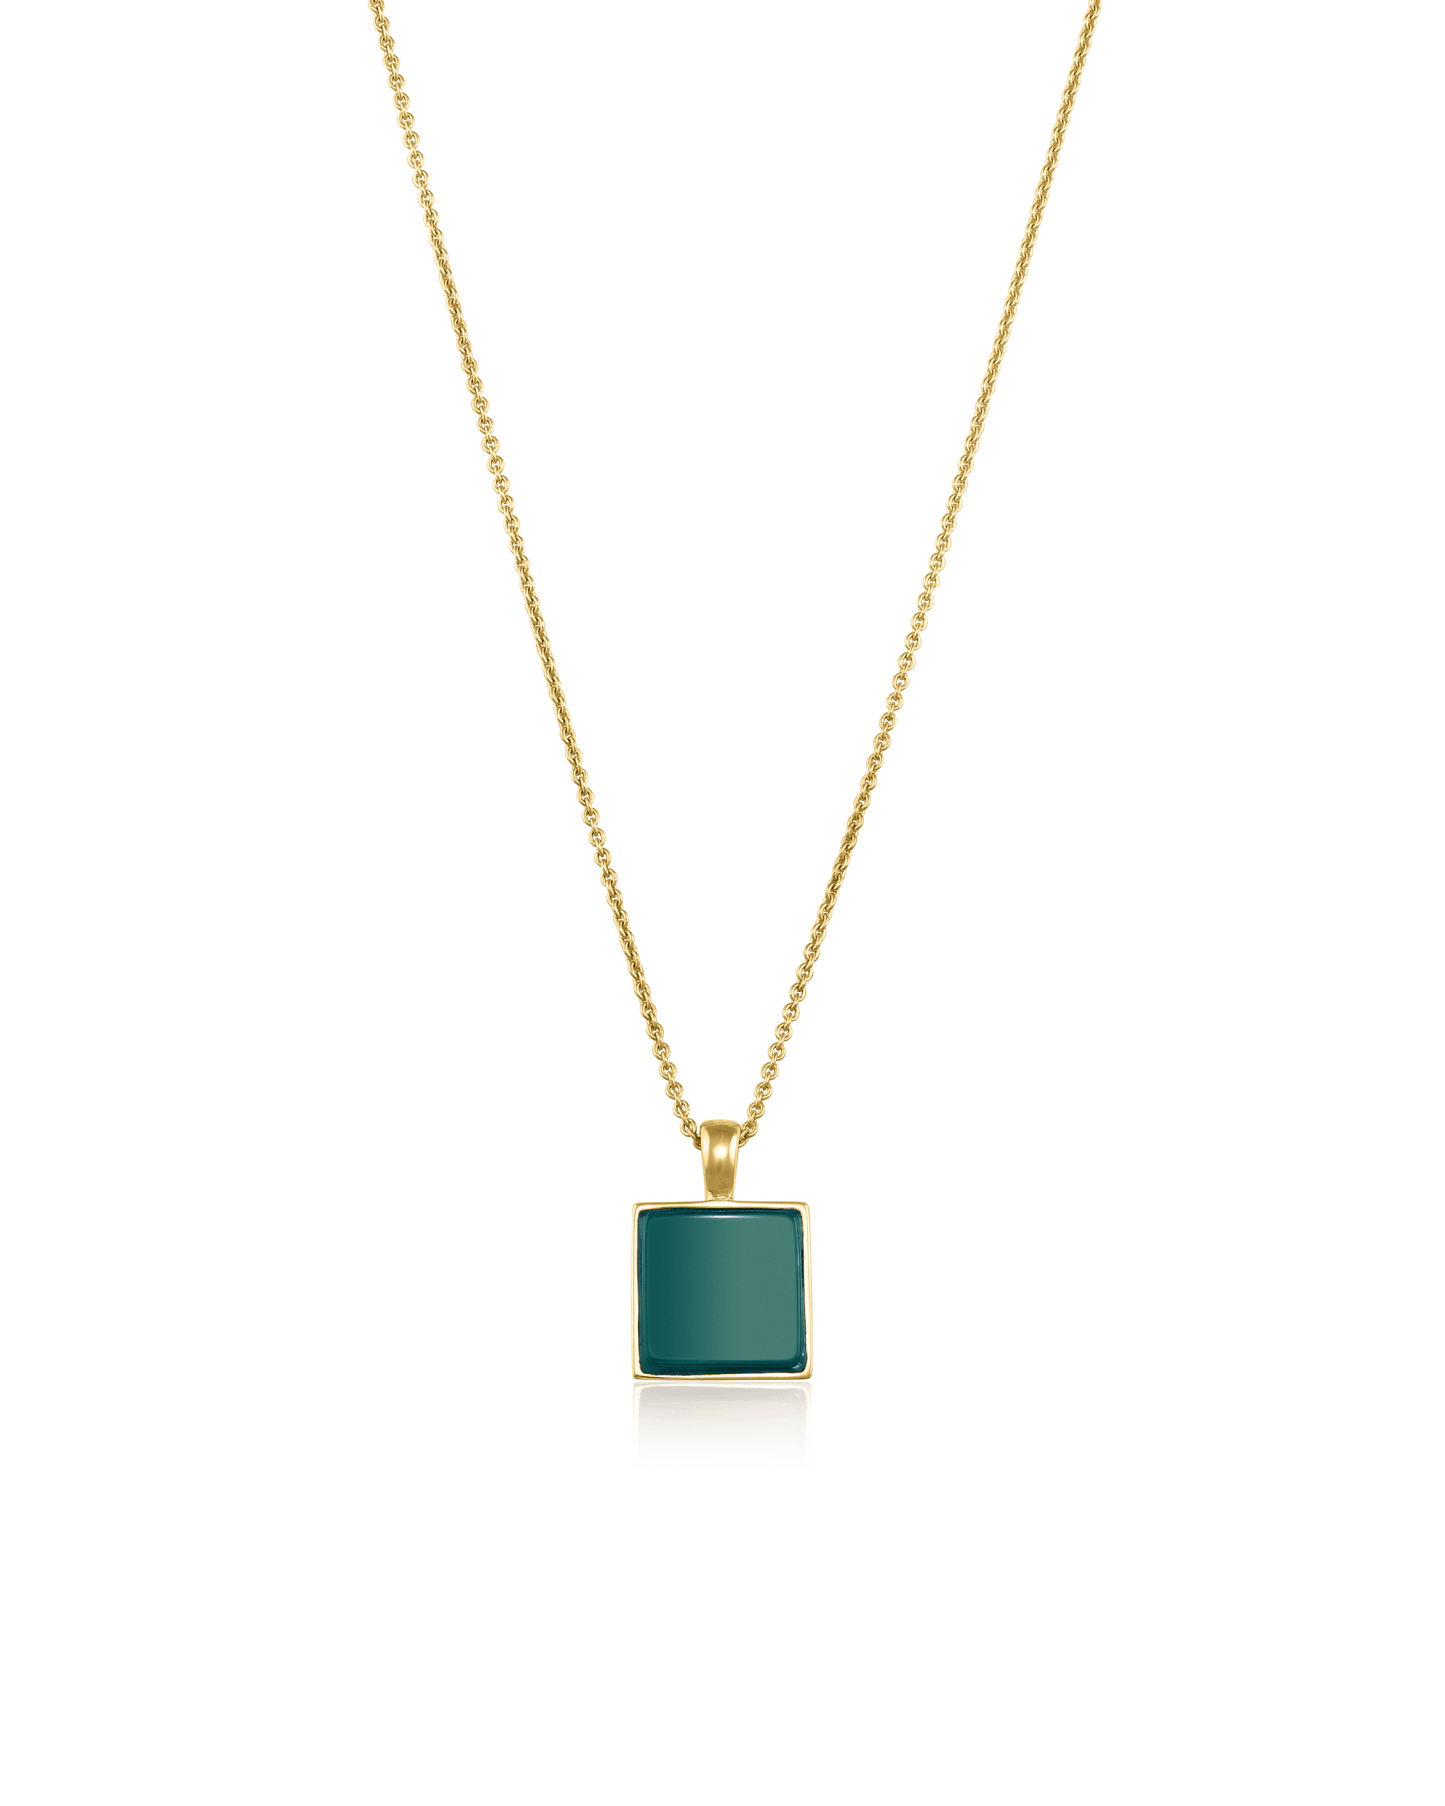 El Dorado Necklace - 18K Gold Vermeil Necklaces magal-dev Green Agate 22" 